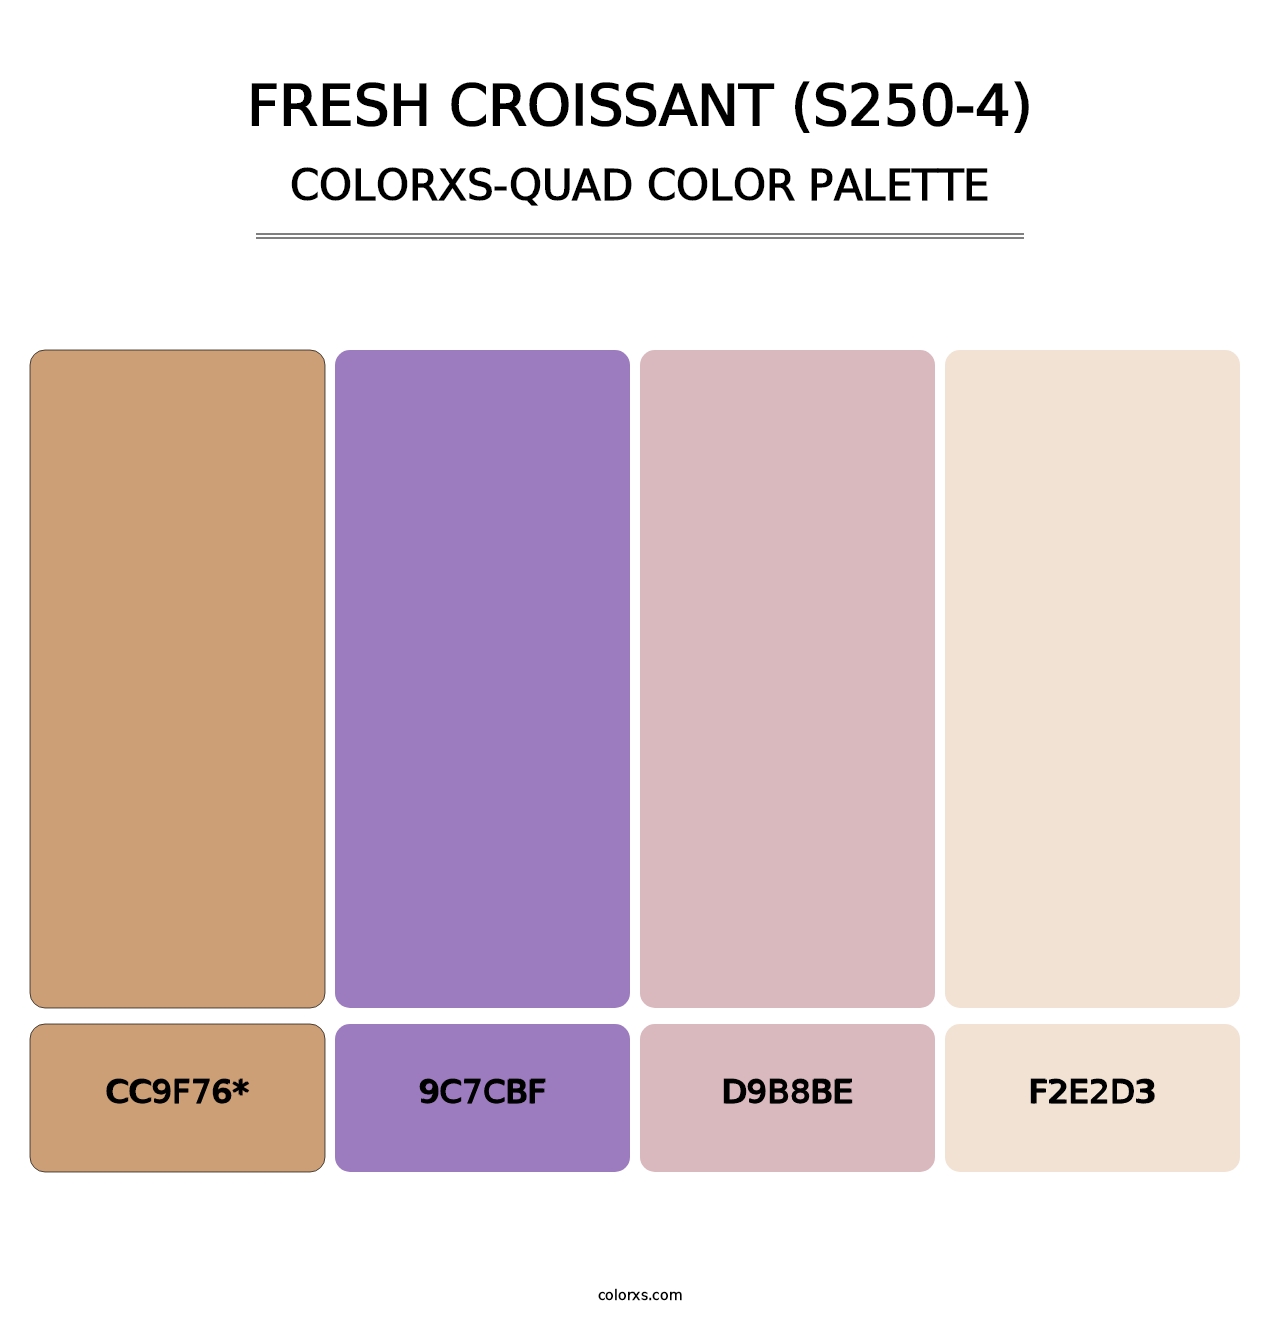 Fresh Croissant (S250-4) - Colorxs Quad Palette